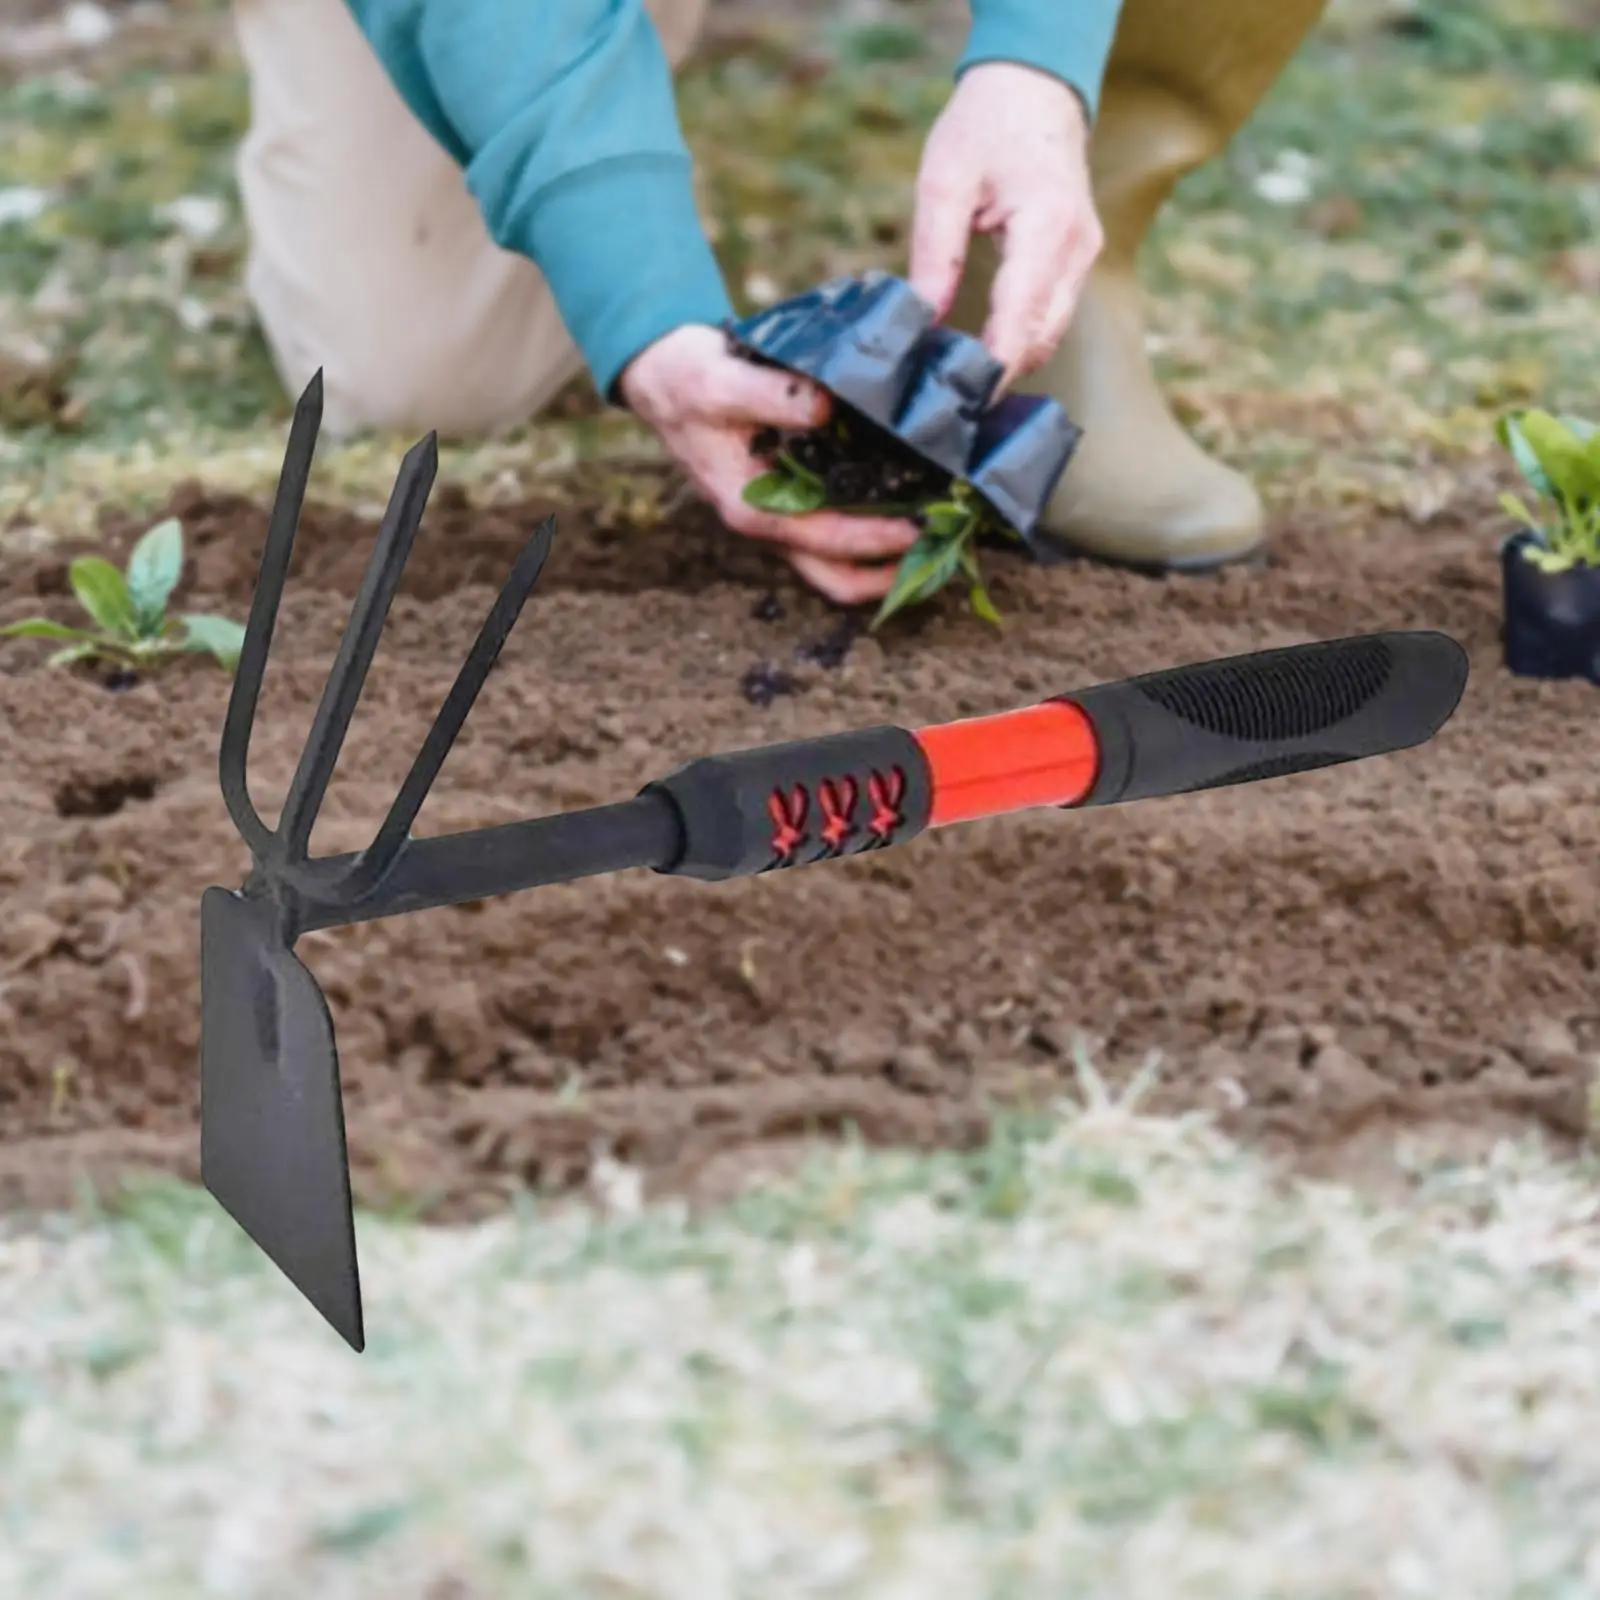 Multifunctional Weeder Labor Saving Lightweight Portable Garden Weeder Tool Hand Weeder for Yard Planting Bonsai Garden Lawn